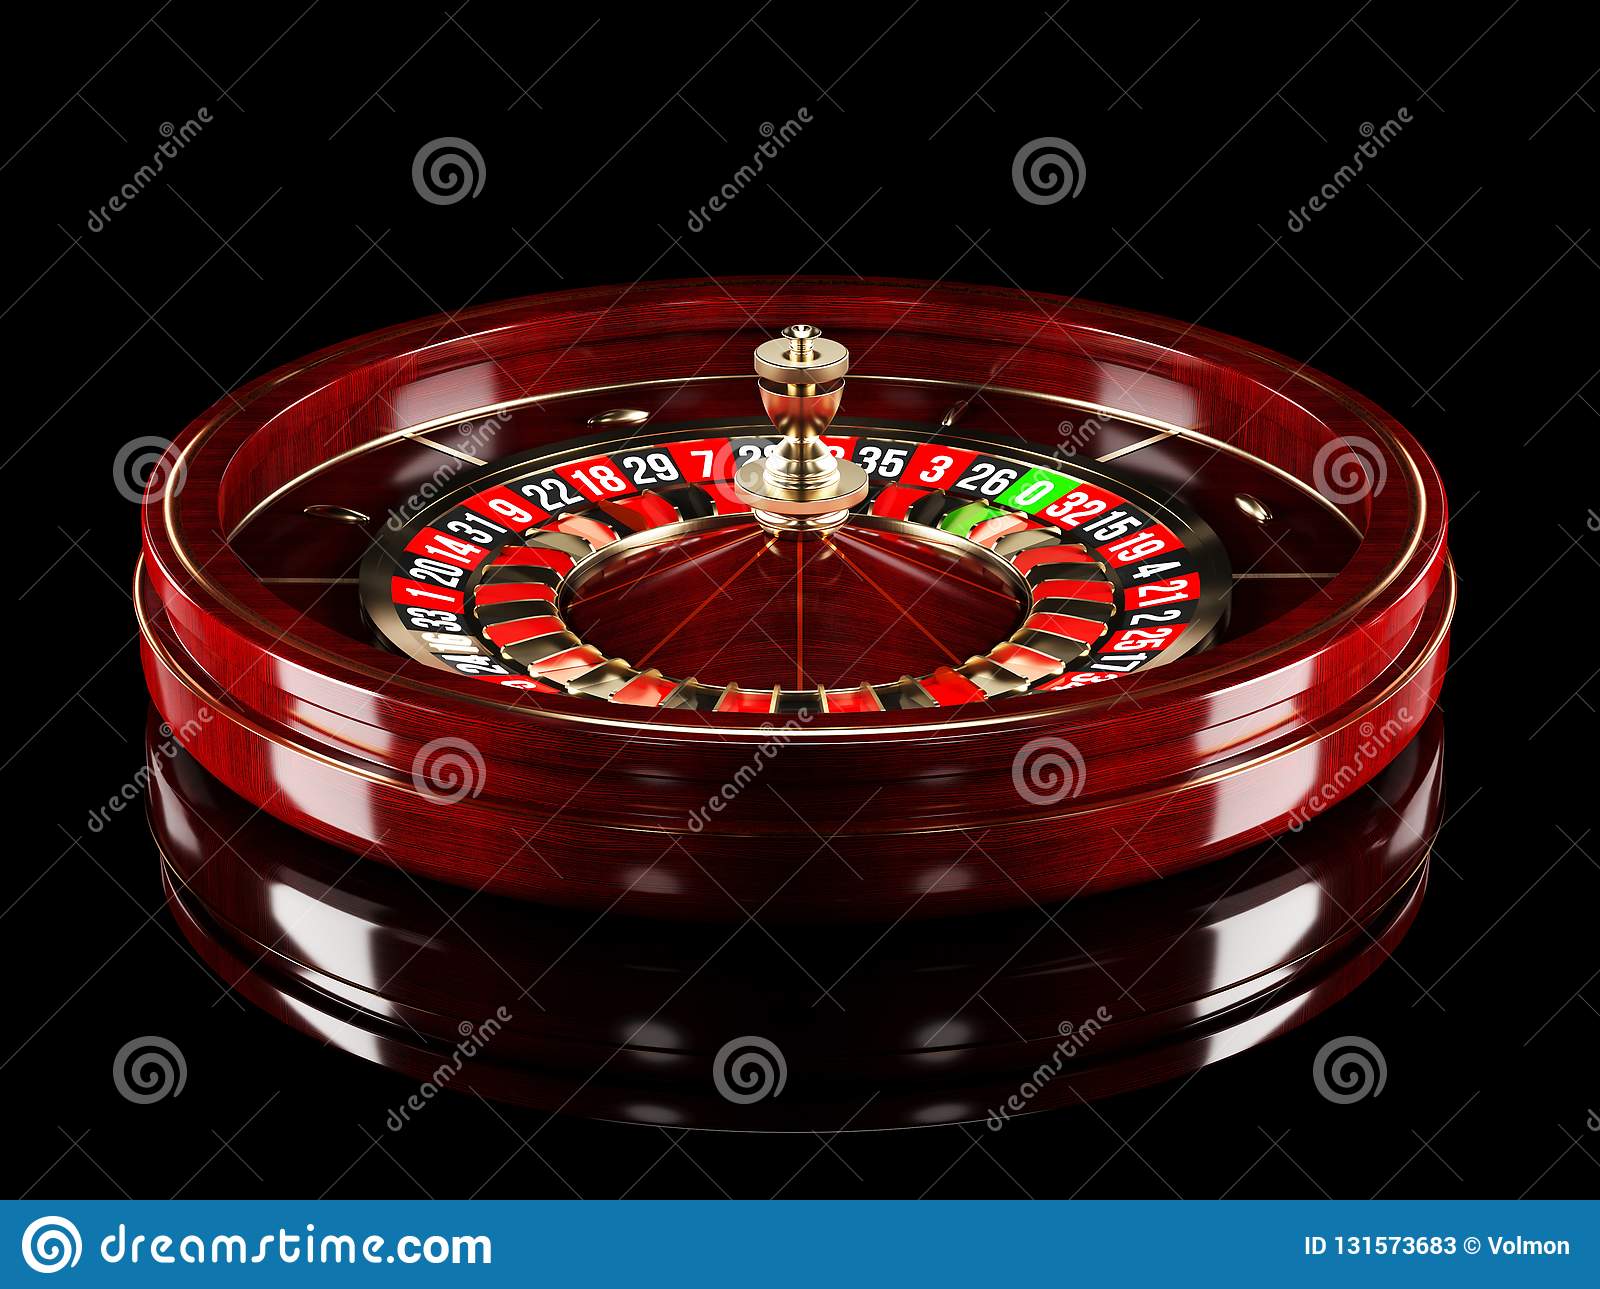 Casino slot for